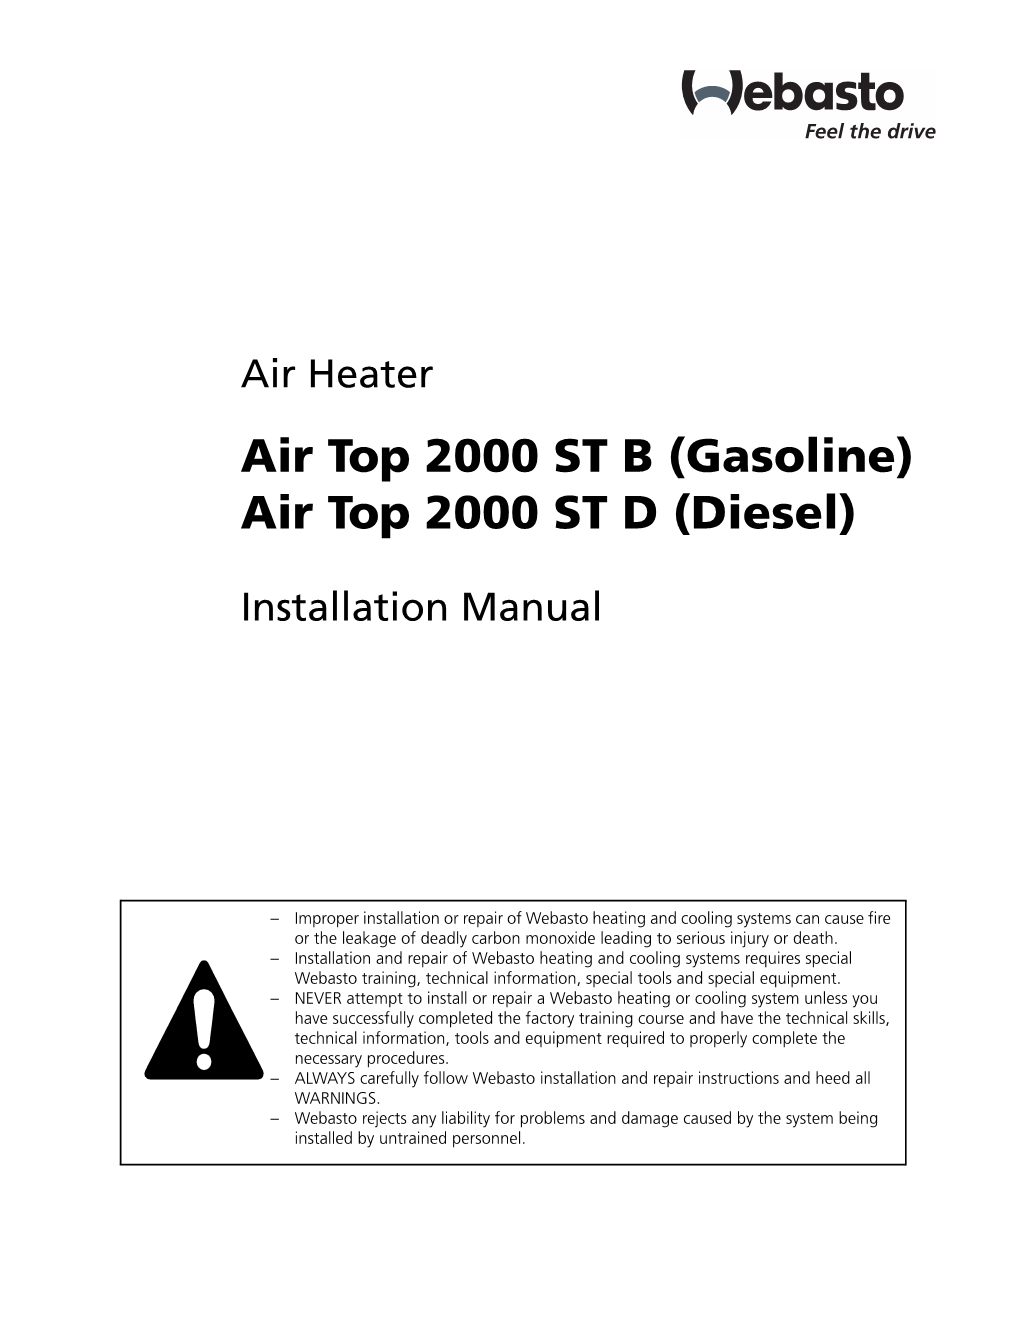 Air Top 2000 ST D (Diesel)